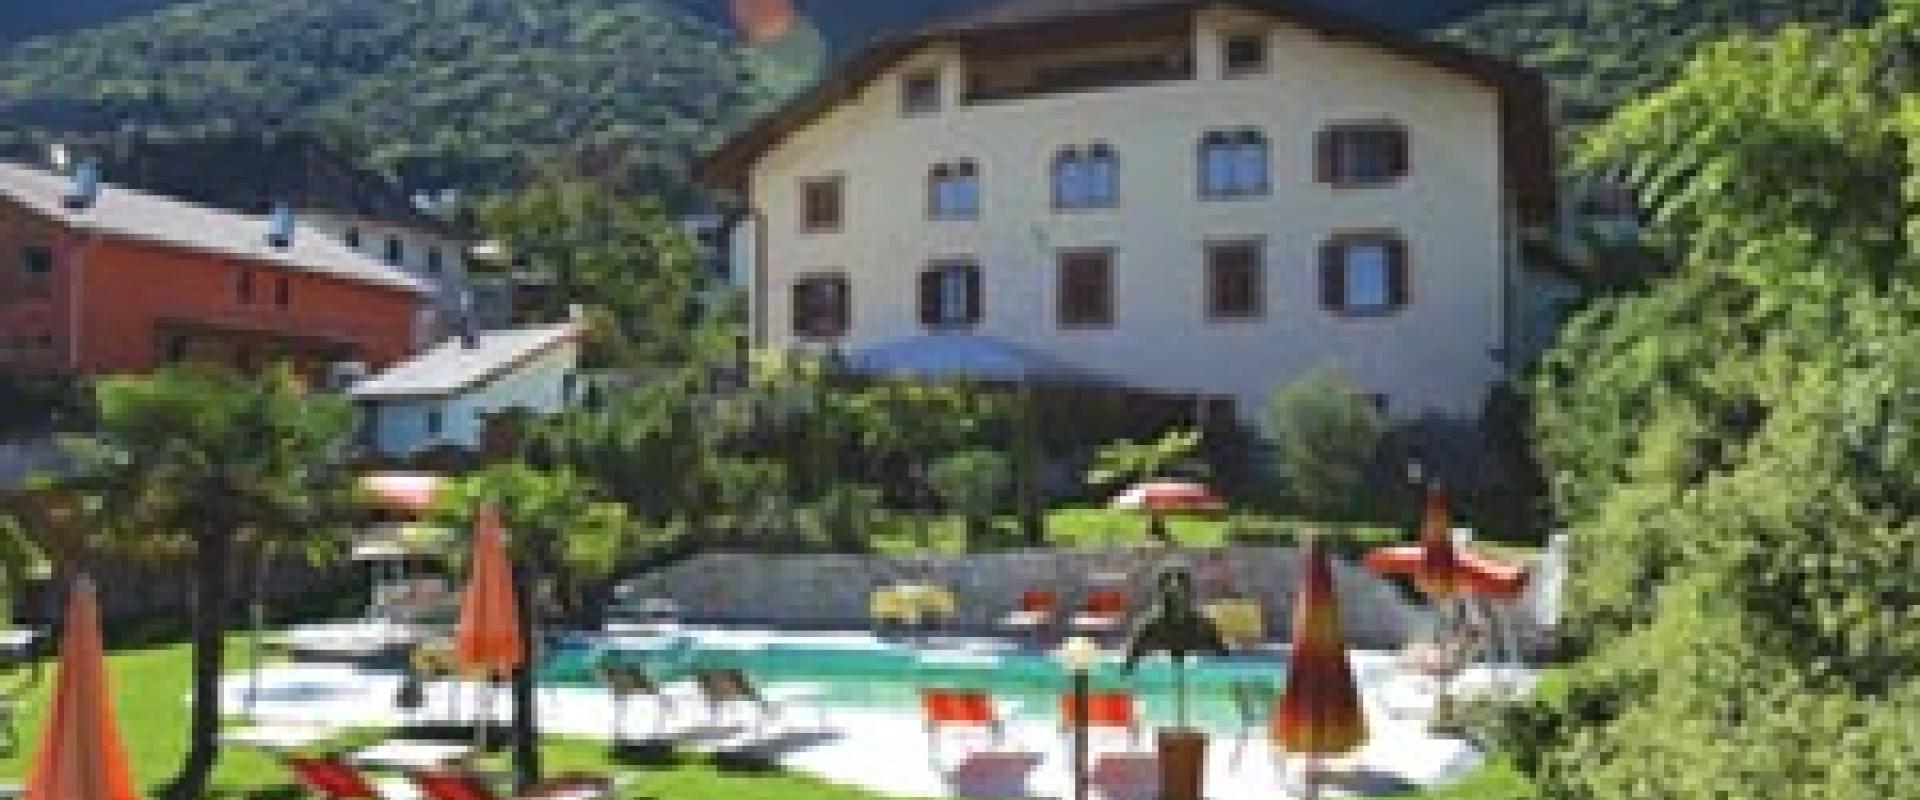 14270 Biker Hotel Brunnenhof in Südtirol/Dolomiten.jpg